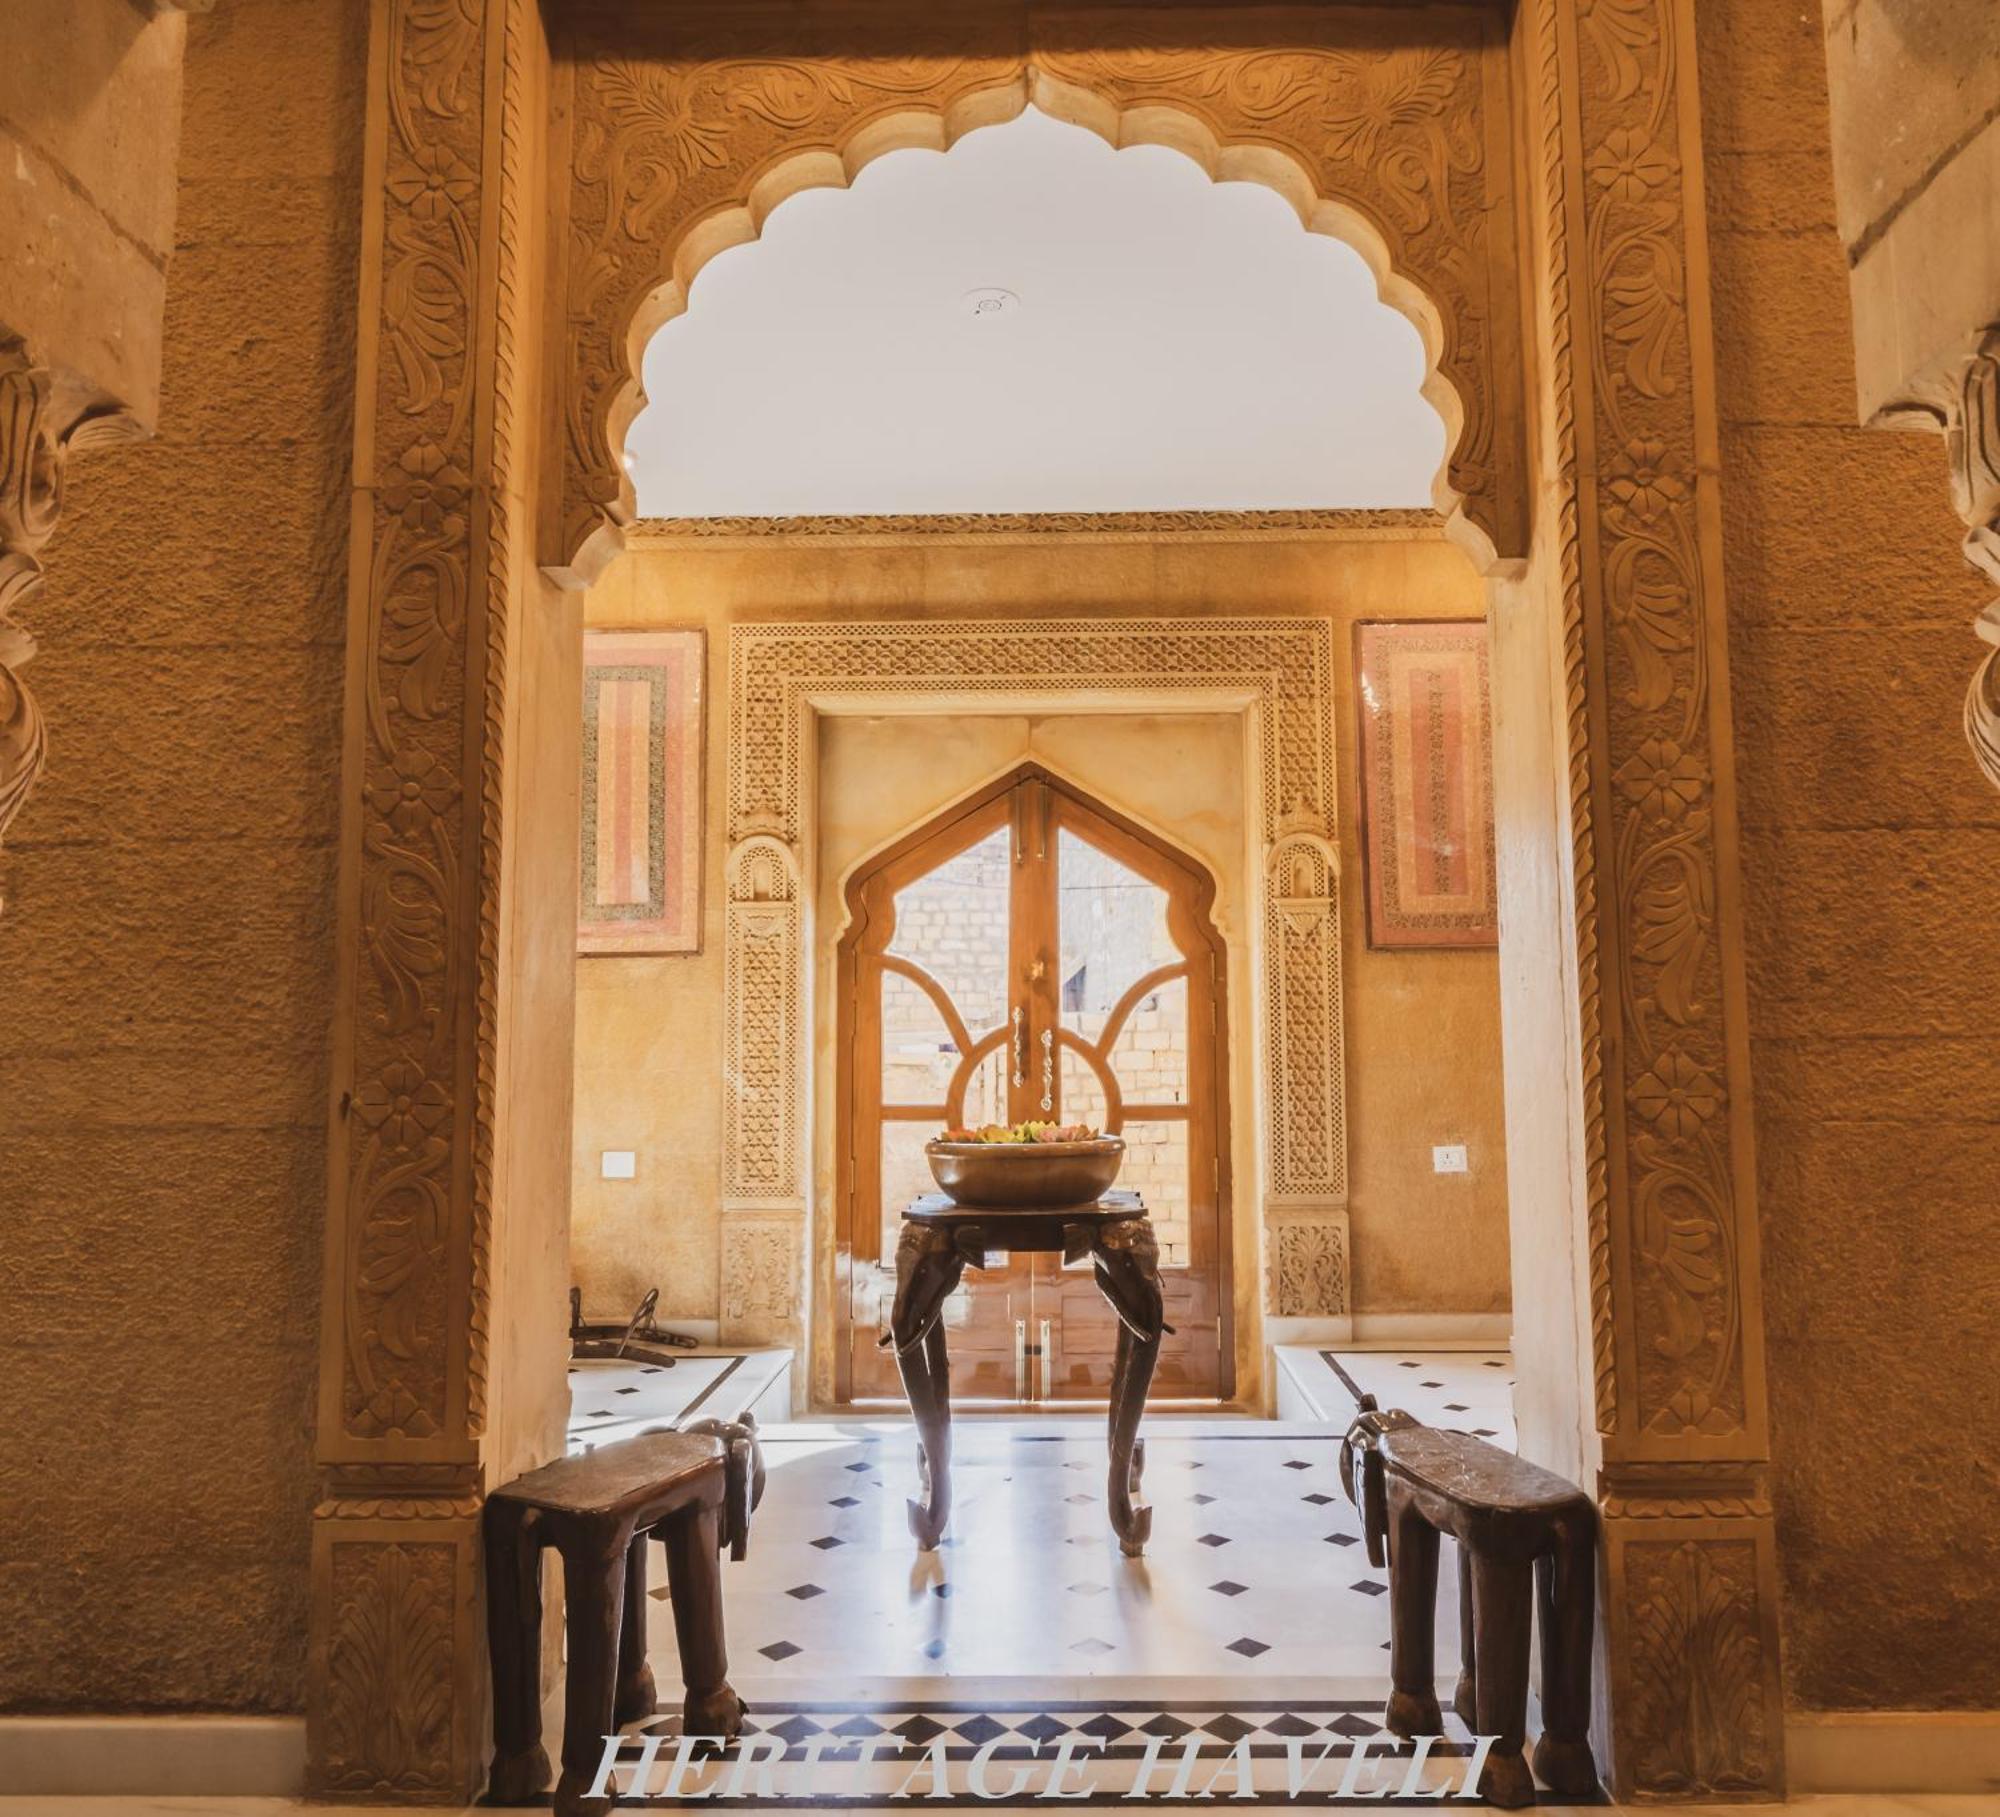 Gaji Hotel Jaisalmer Eksteriør bilde